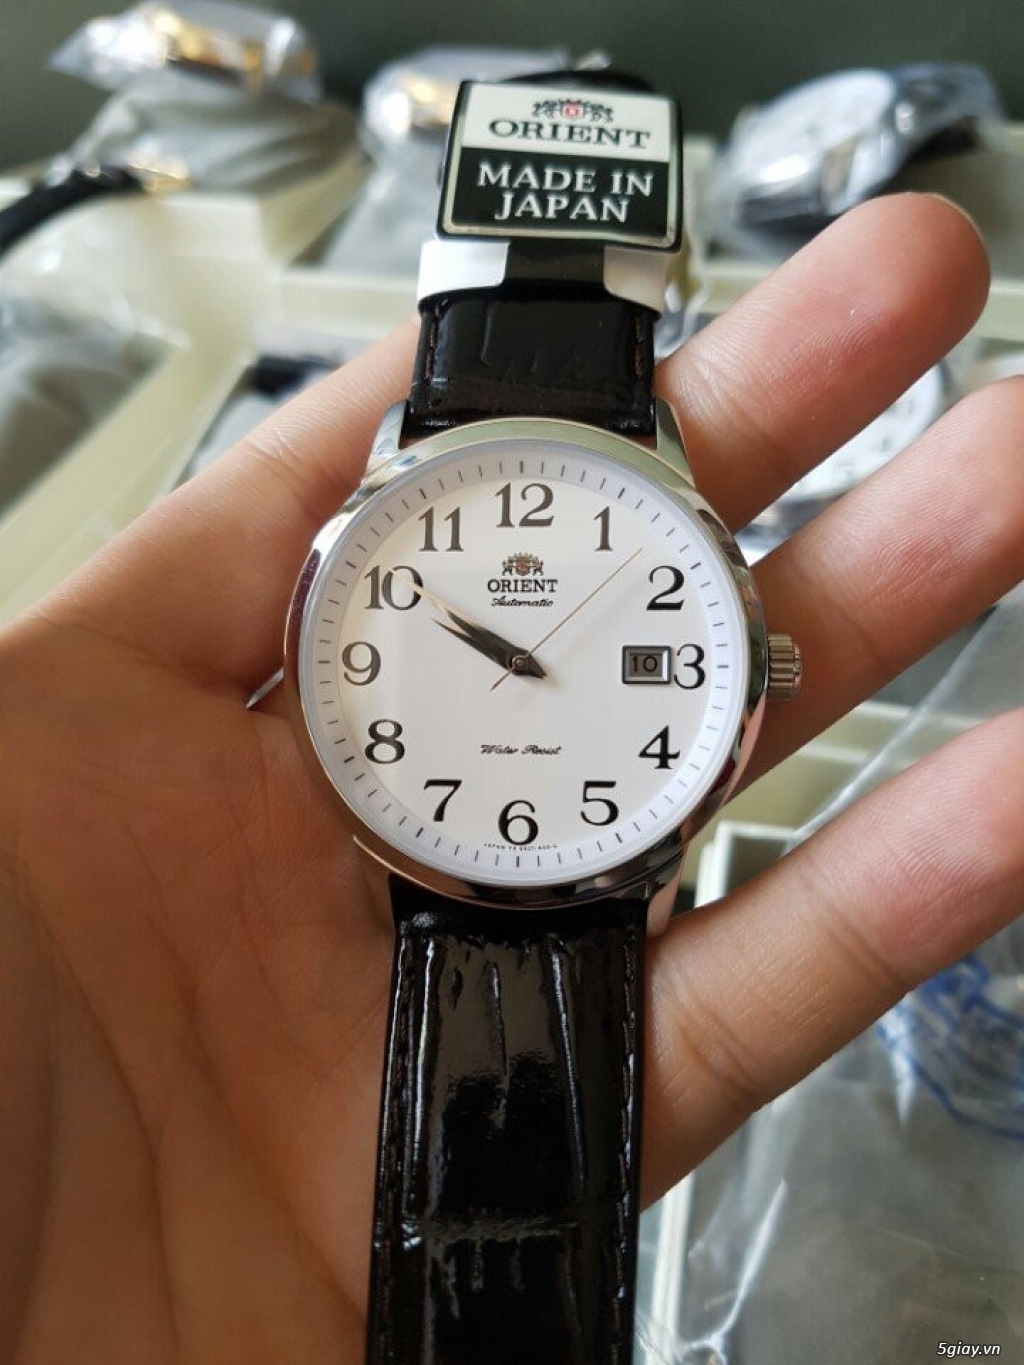 Đồng hồ __--::: ORIENT :::--__ chính hãng Nhật bảo hành 1 năm - 1